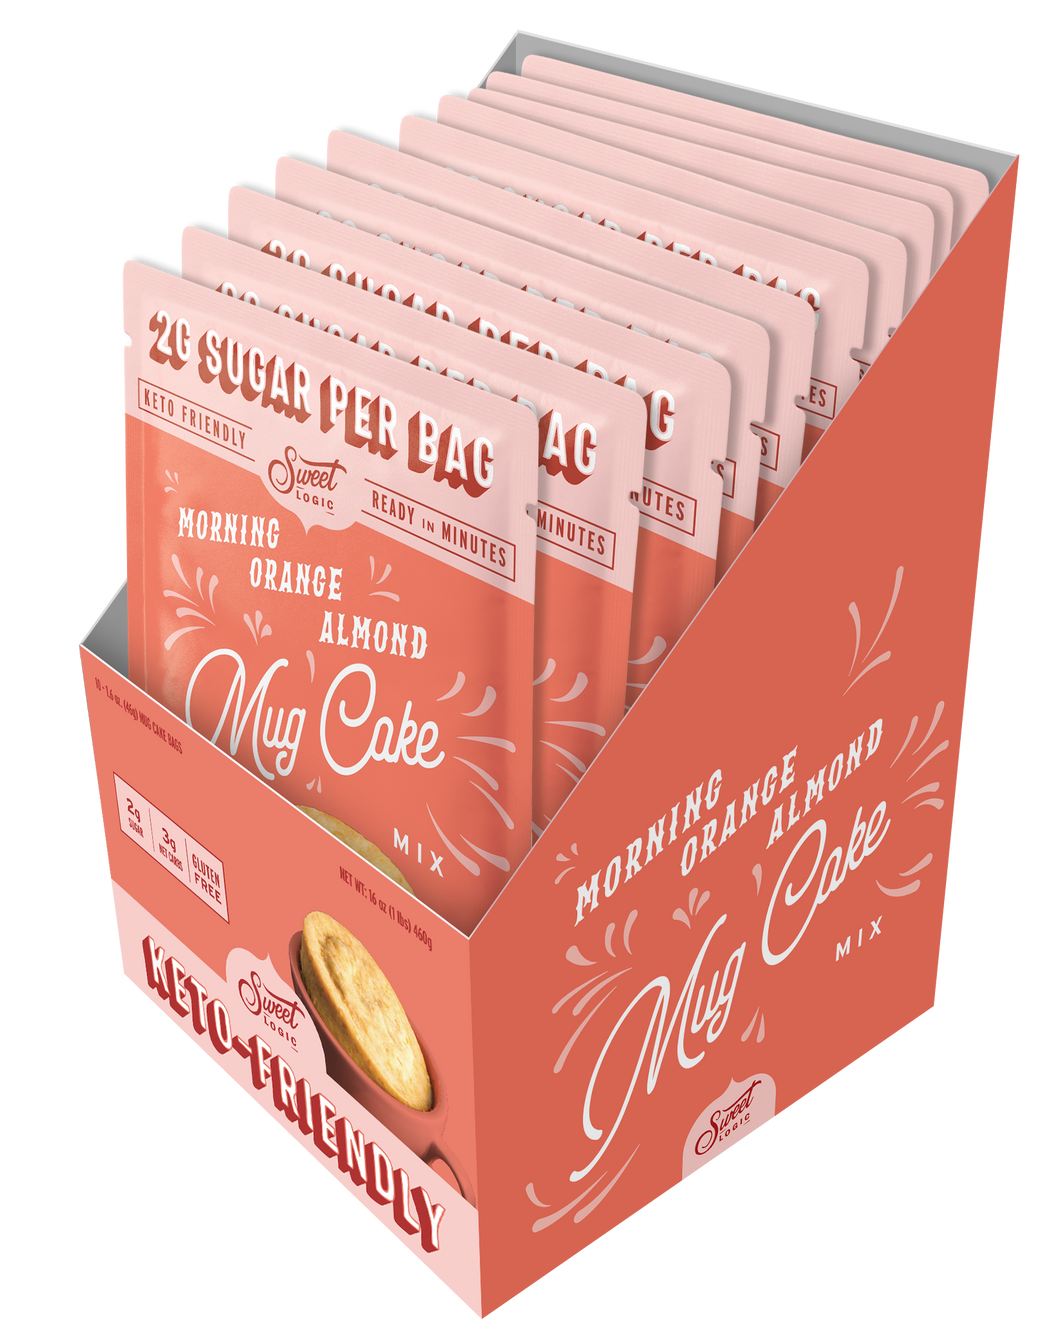 Orange Almond Mug Cake (10-Pack) - Retail Box